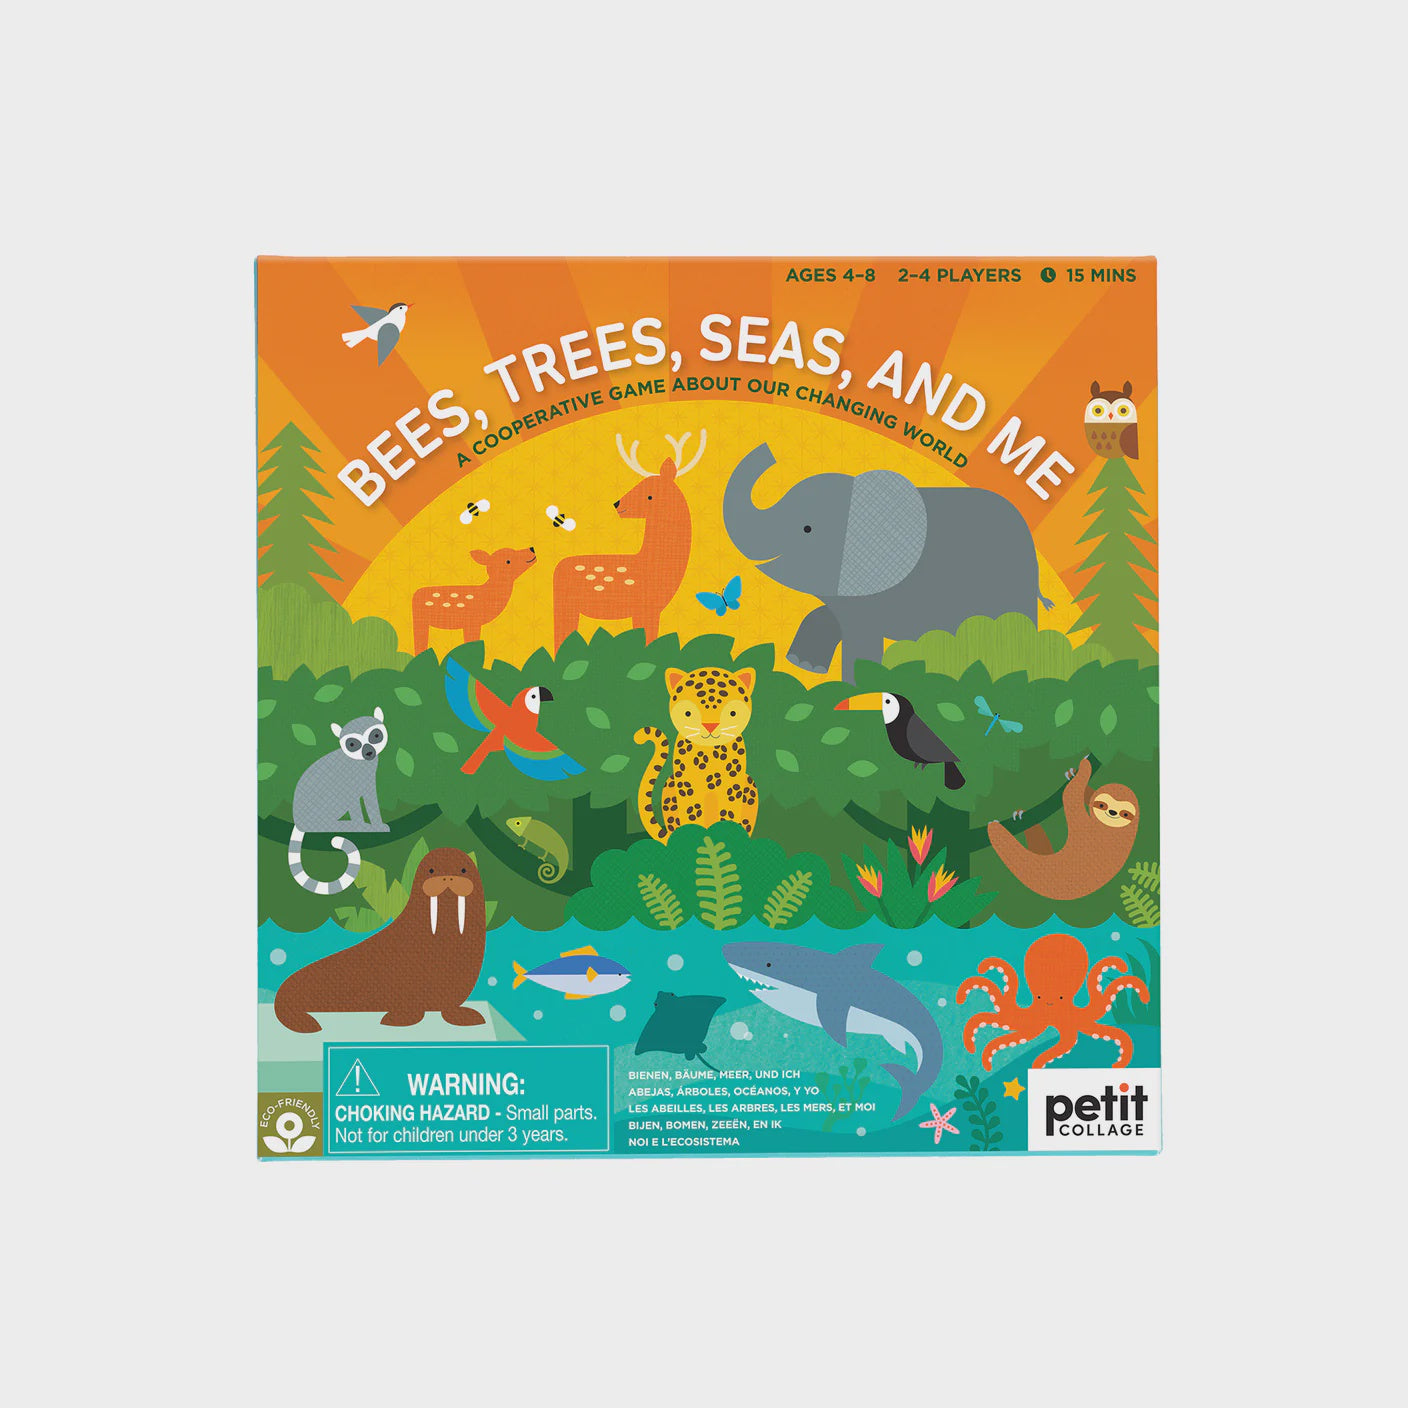 Bees, Trees, Seas & Me Game